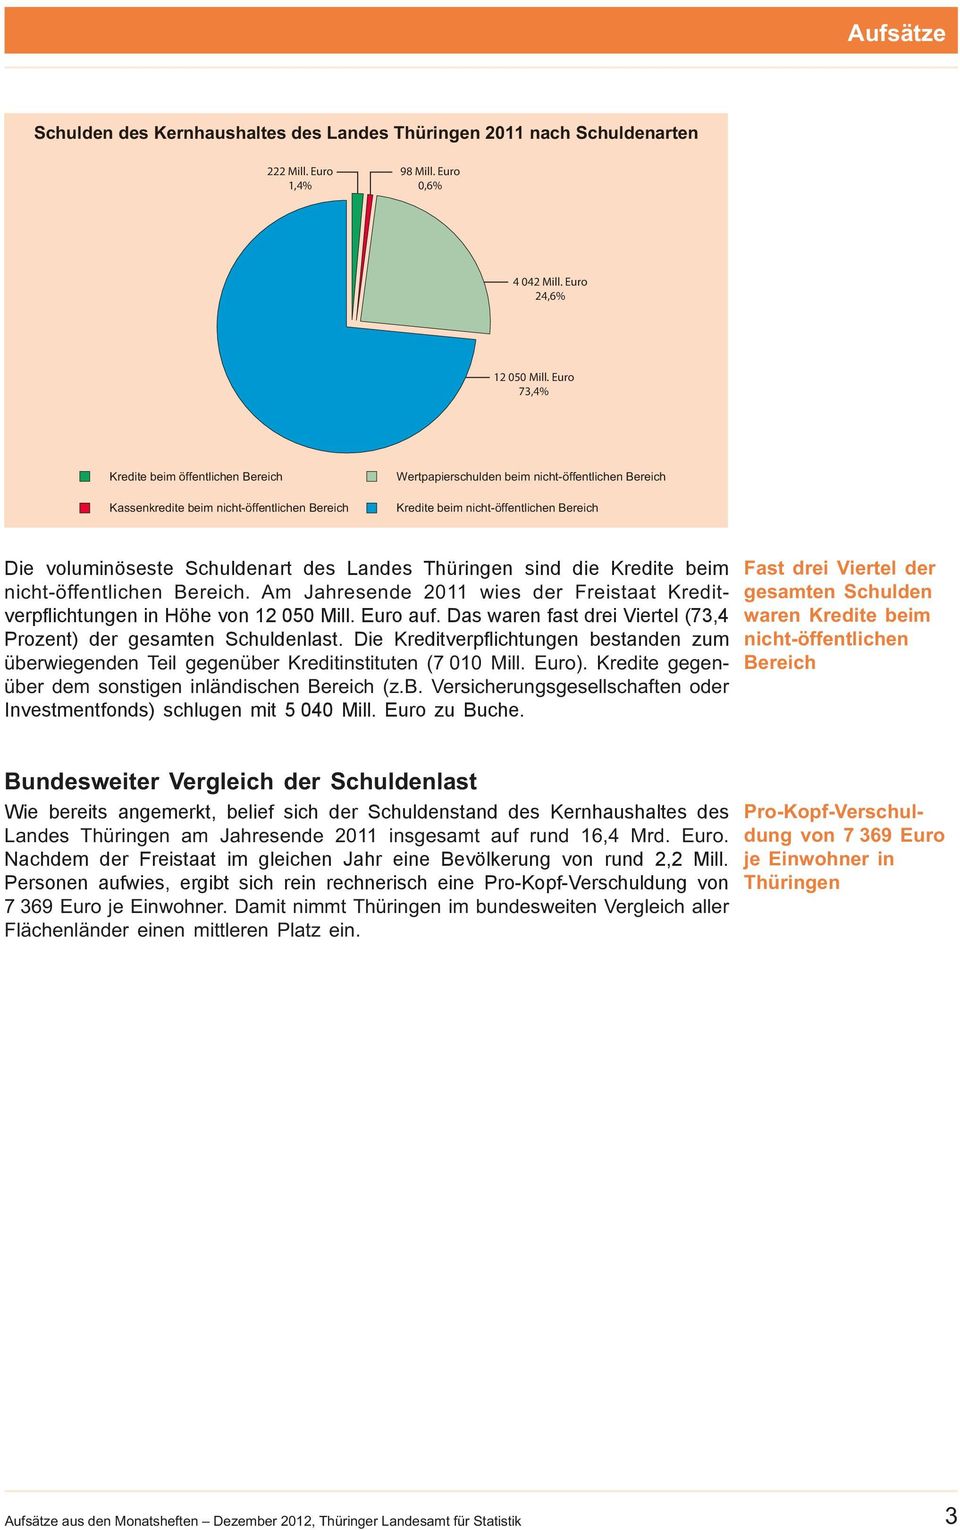 Schuldenart des Landes Thüringen sind die Kredite beim nicht-öffentlichen Bereich. Am Jahresende 2011 wies der Freistaat Kreditverpflichtungen in Höhe von 12 050 Mill. Euro auf.